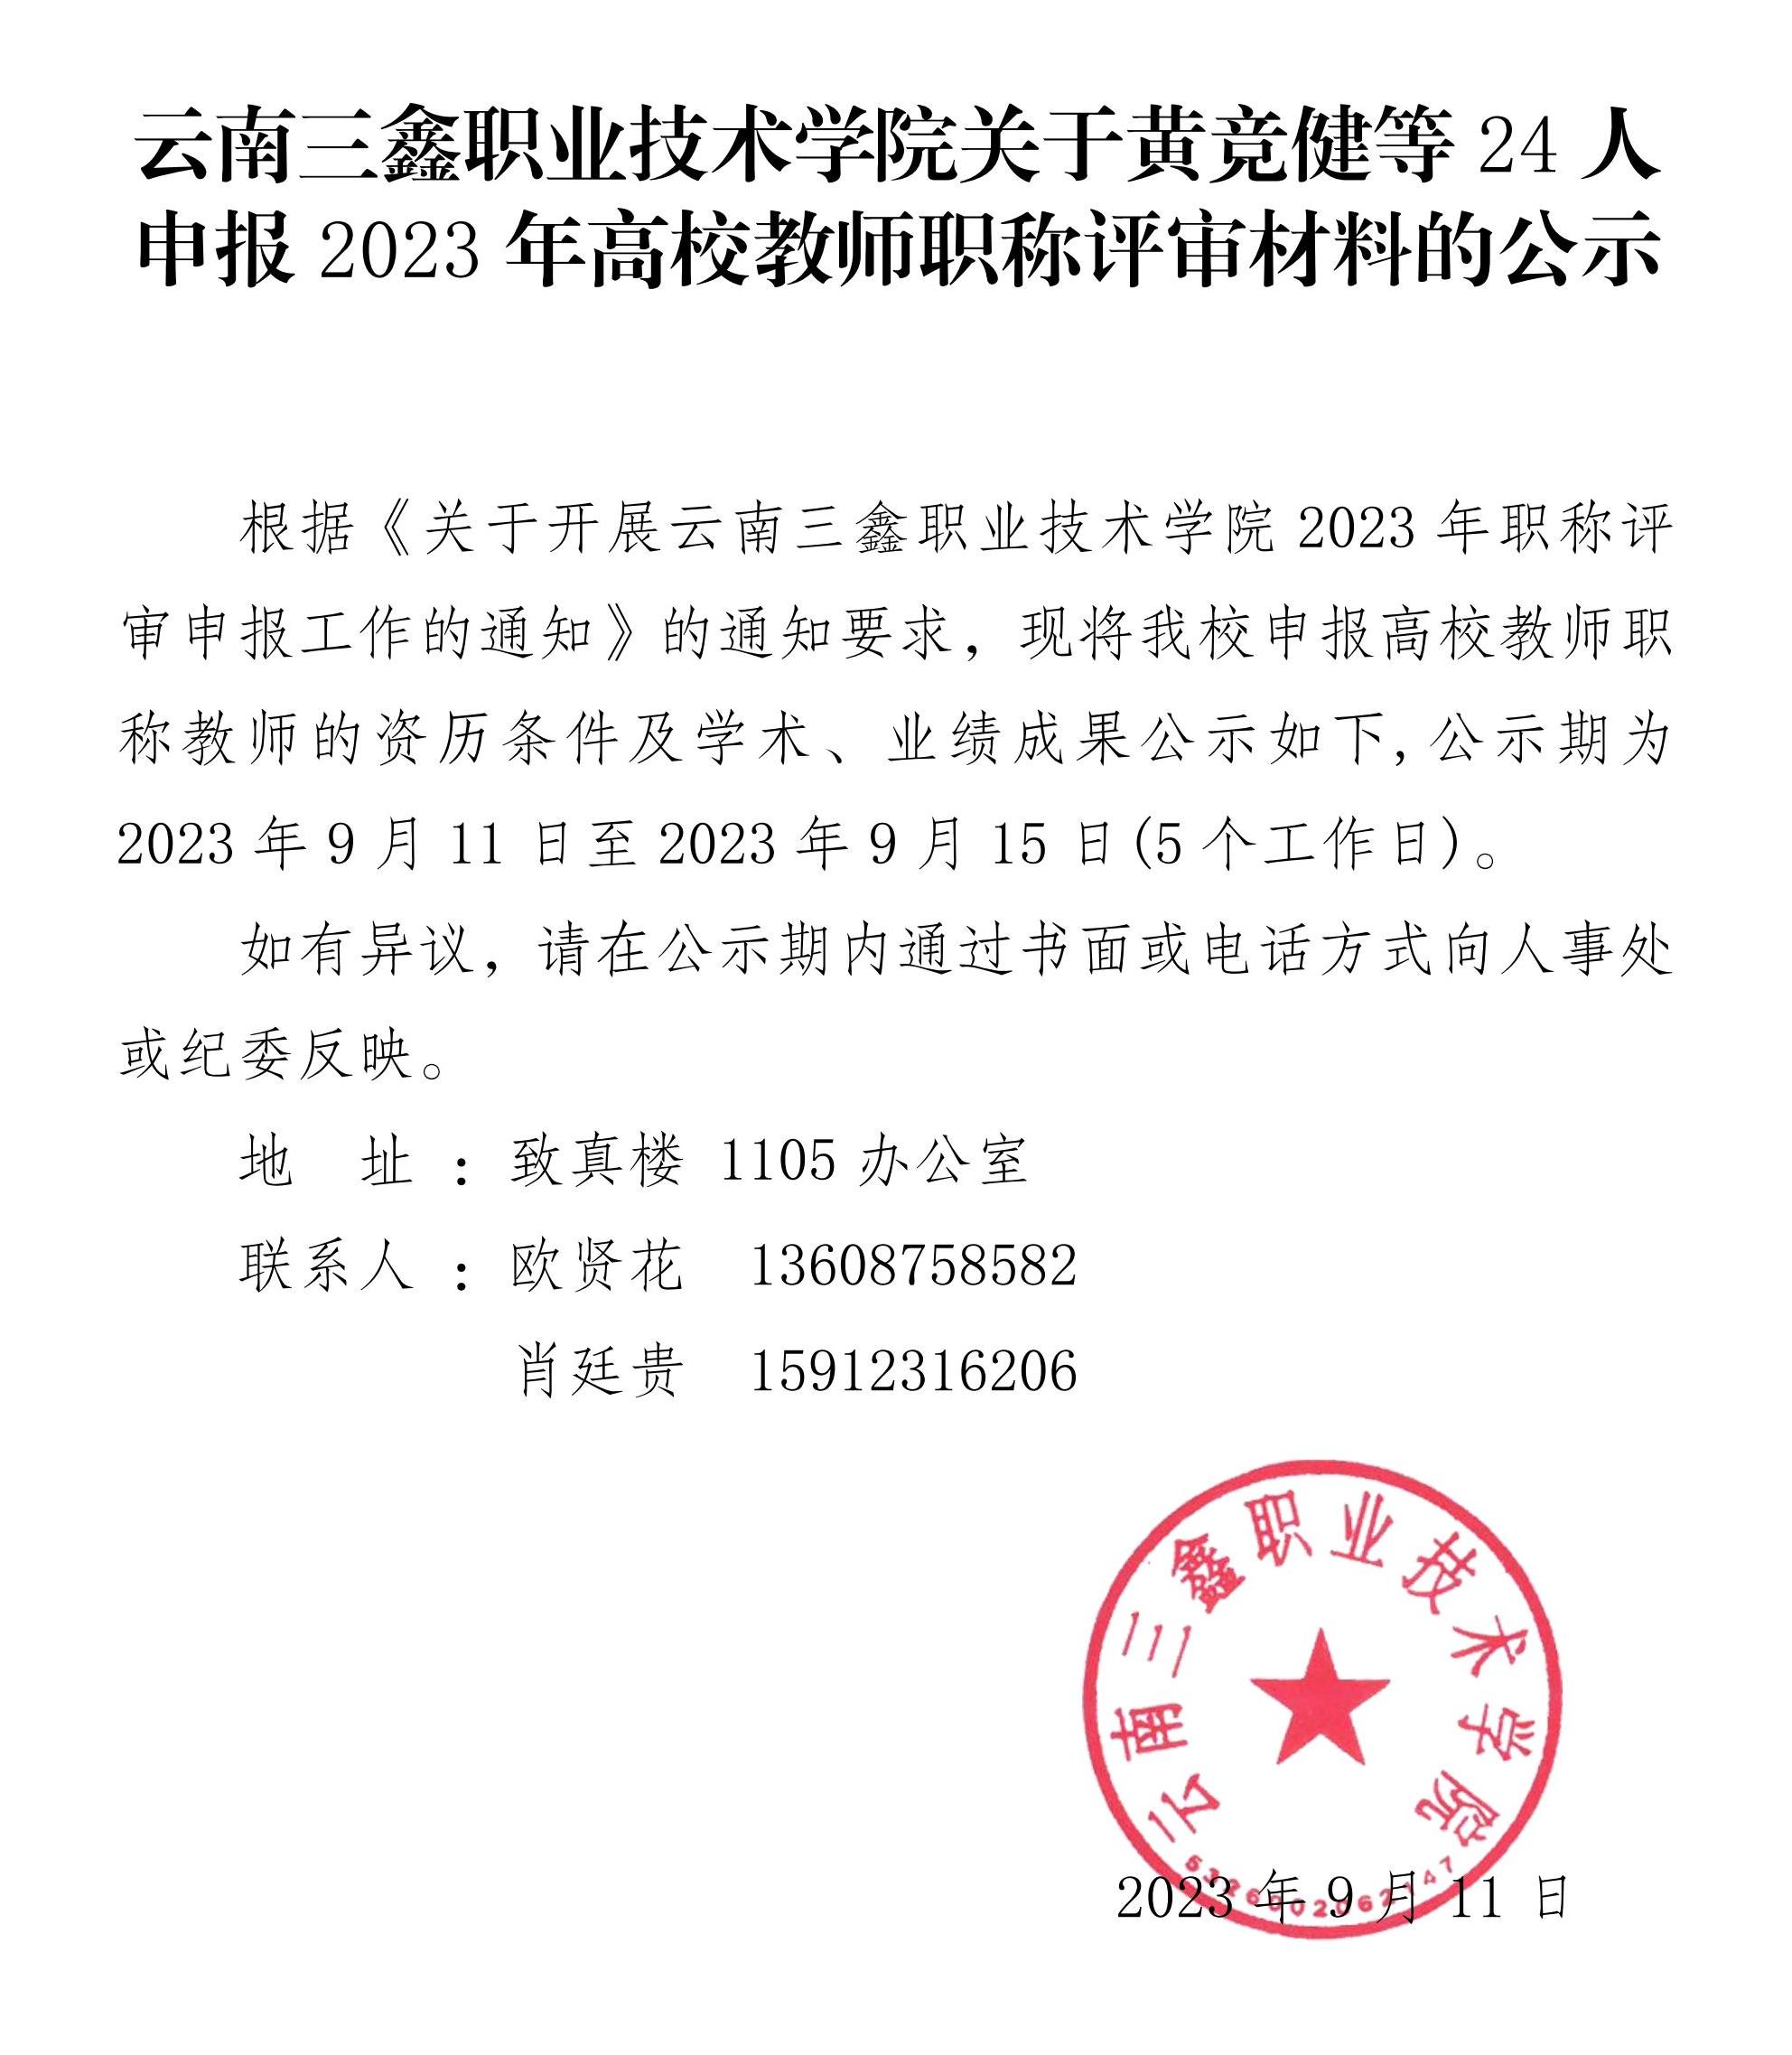 关于黄竞健等24人申报2023年高校职称评审的材料公示_00.jpg